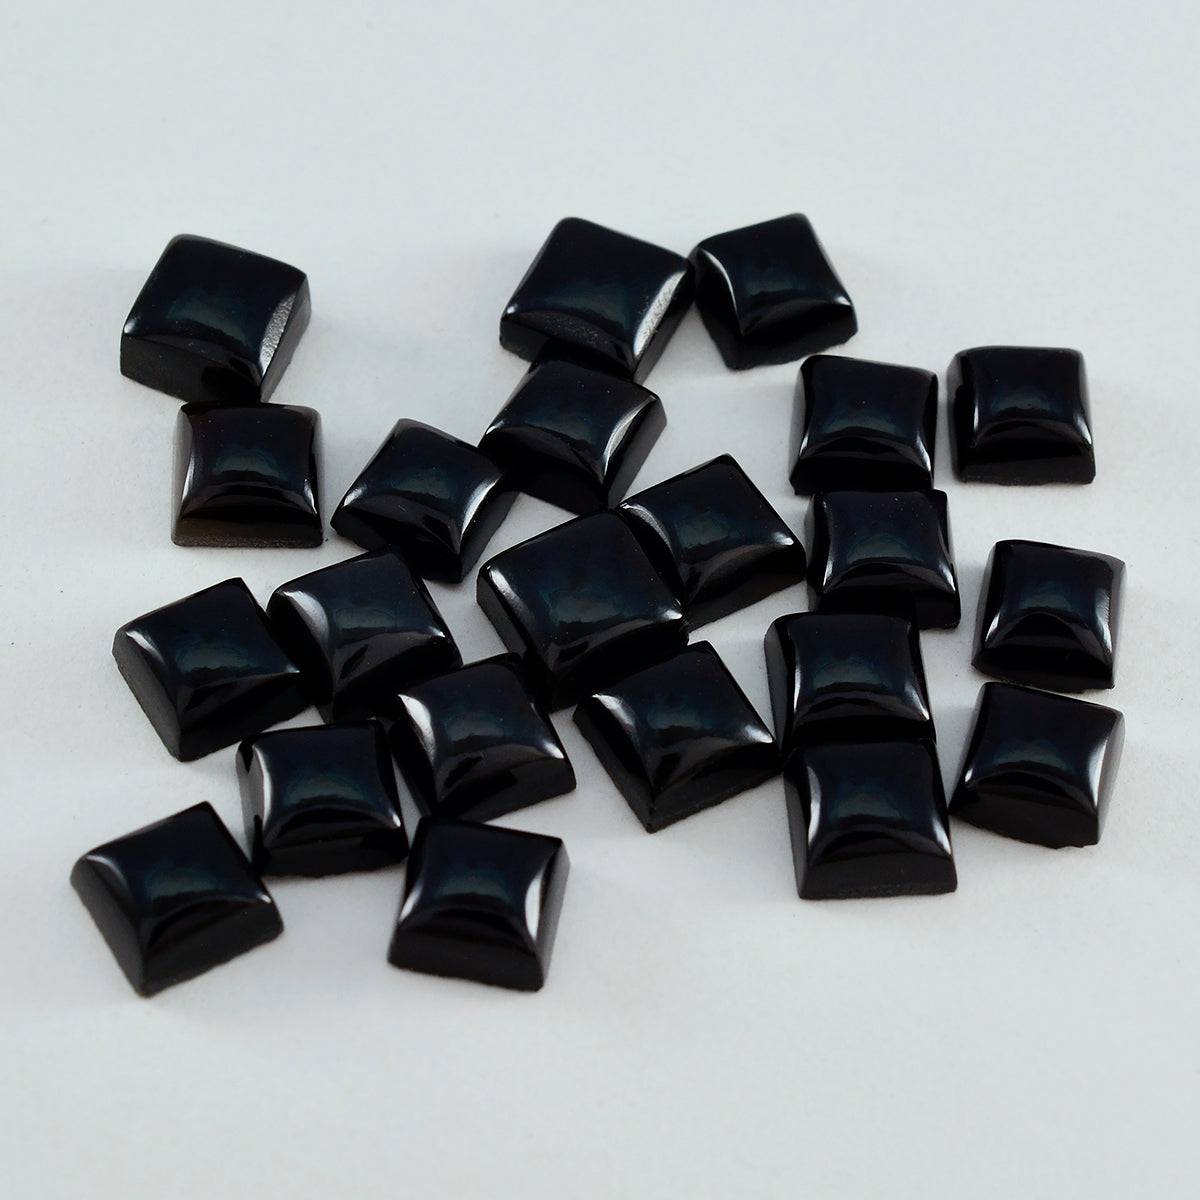 riyogems 1 шт. черный оникс кабошон 7x7 мм квадратной формы красивое качество свободный драгоценный камень